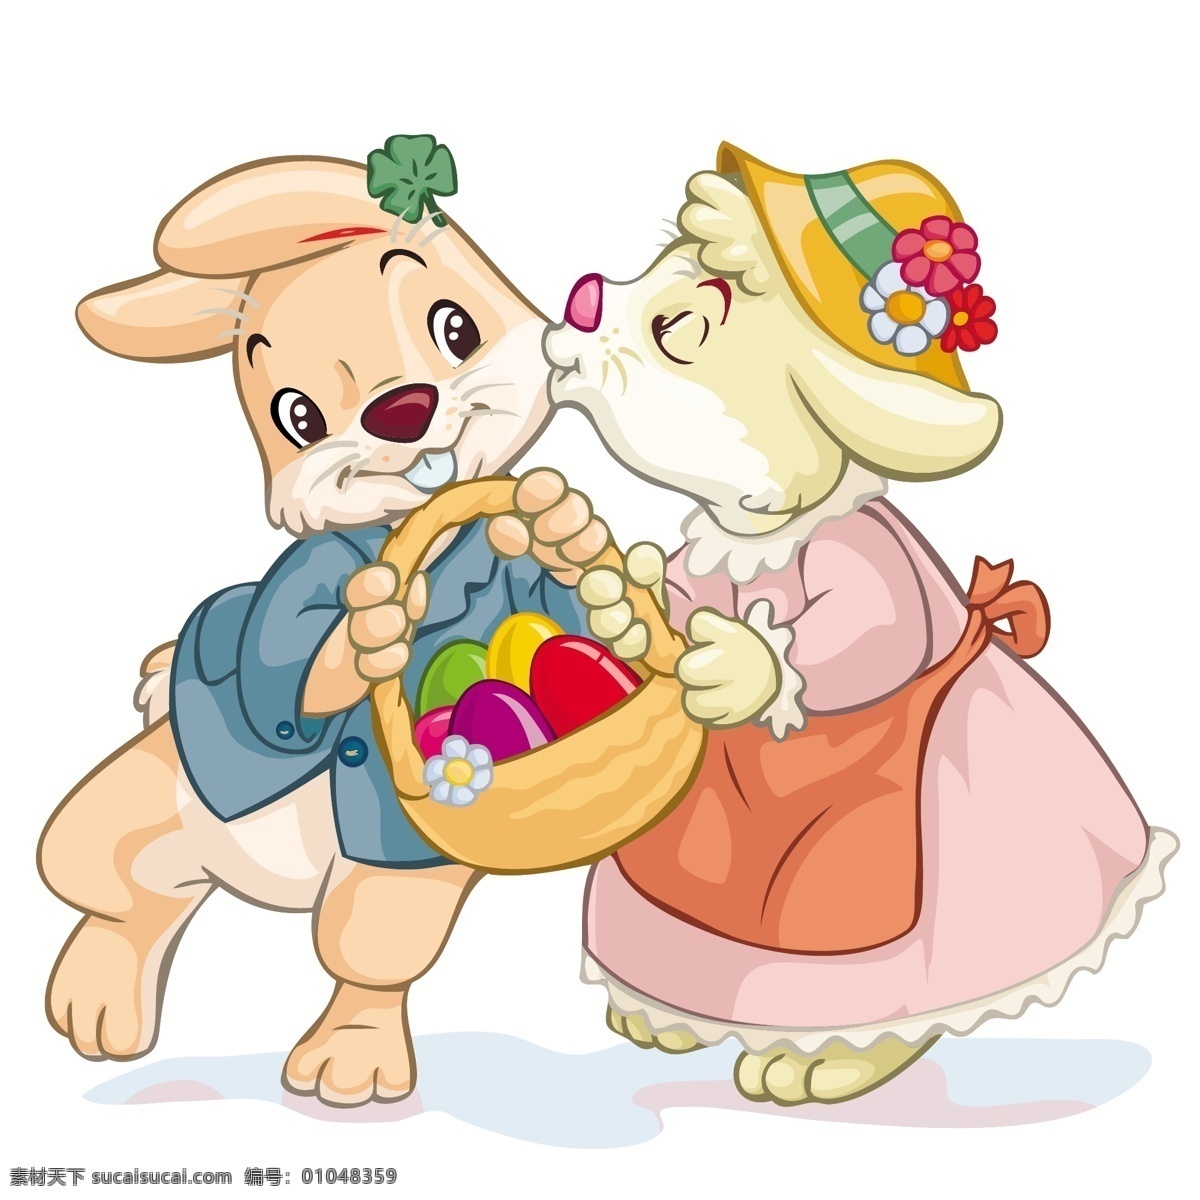 复活节 彩蛋 兔子 节日 矢量素材 节日素材 矢量